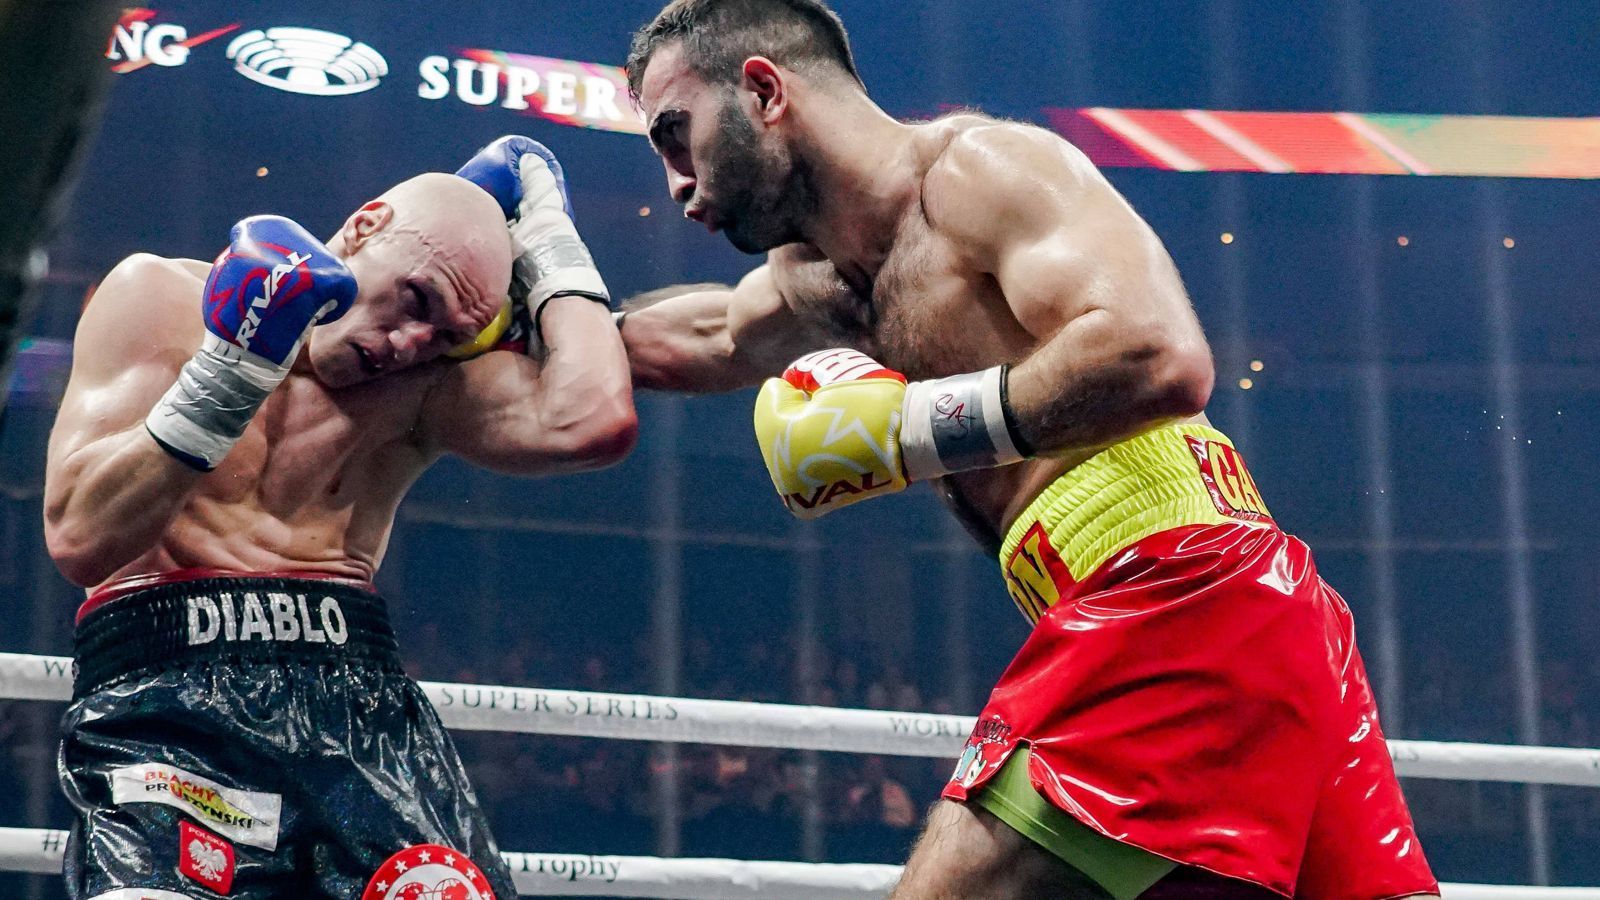 
                <strong>Murat Gassiev: "Iron" mischt das Cruisergewicht auf</strong><br>
                Im Viertelfinale der Muhammad Ali Trophy im letzten Oktober musste in dem Polen Krzysztof Wlodarczyk ein weiterer ehemaliger Titelträger dran glauben.
              